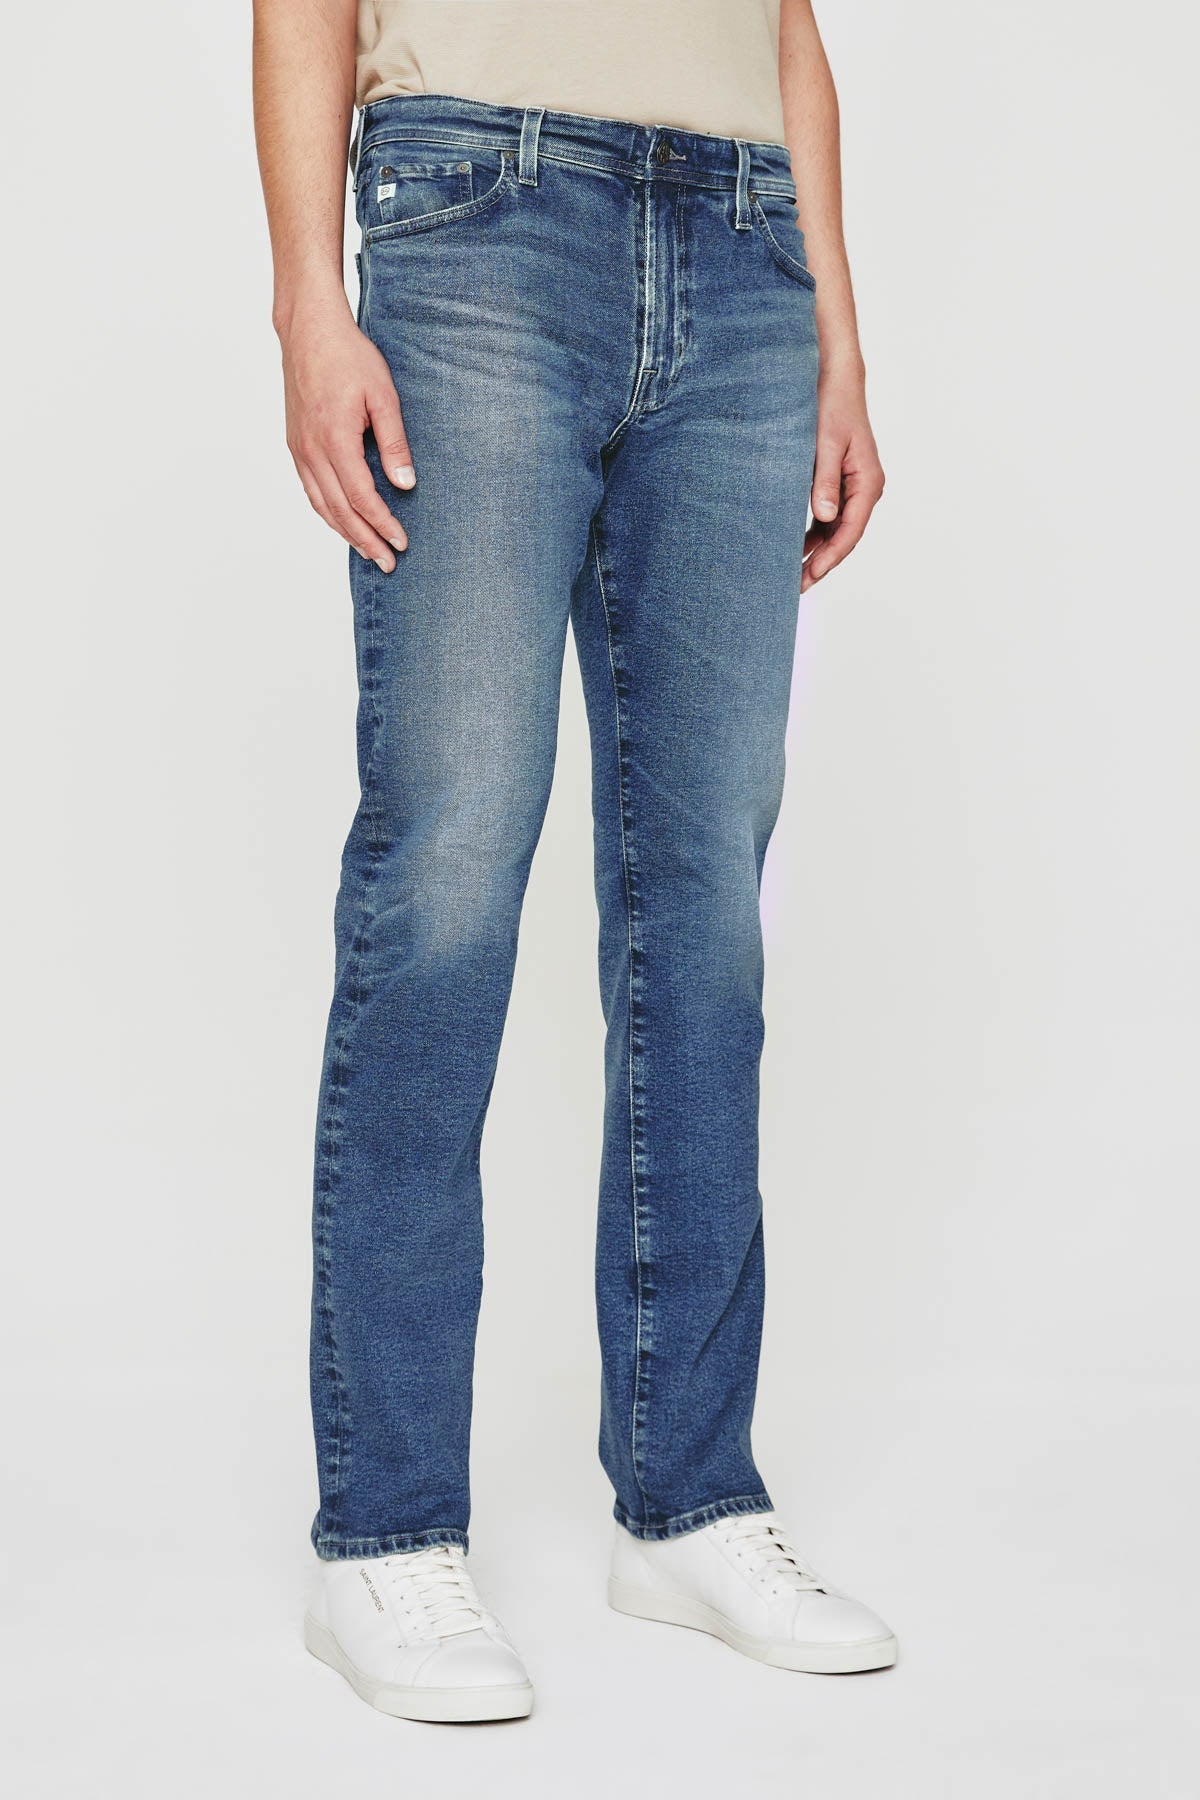 Tellis Modern Slim Jean - AG Jeans - Danali - 1783CCS-15YBRO-30